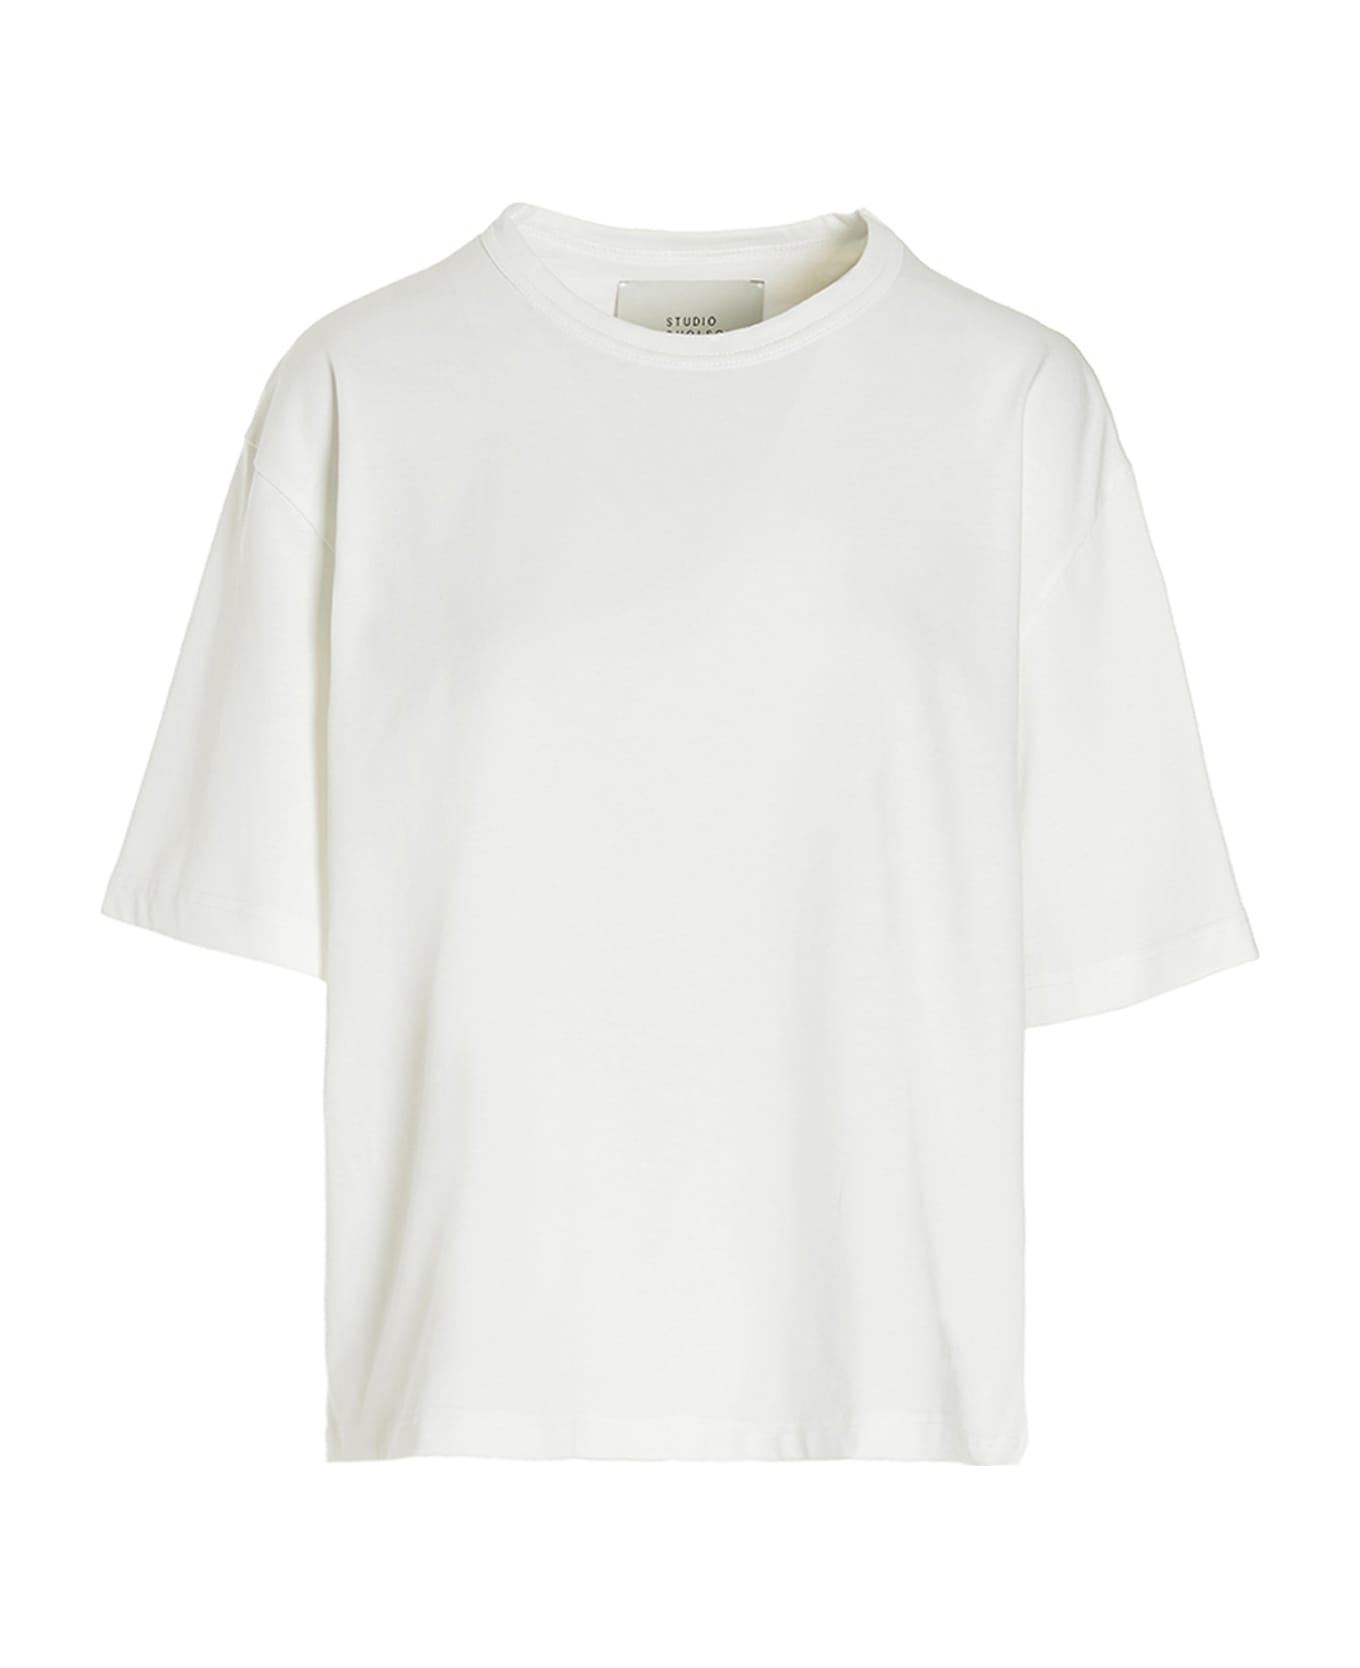 Studio Nicholson Logo T-shirt - White Tシャツ